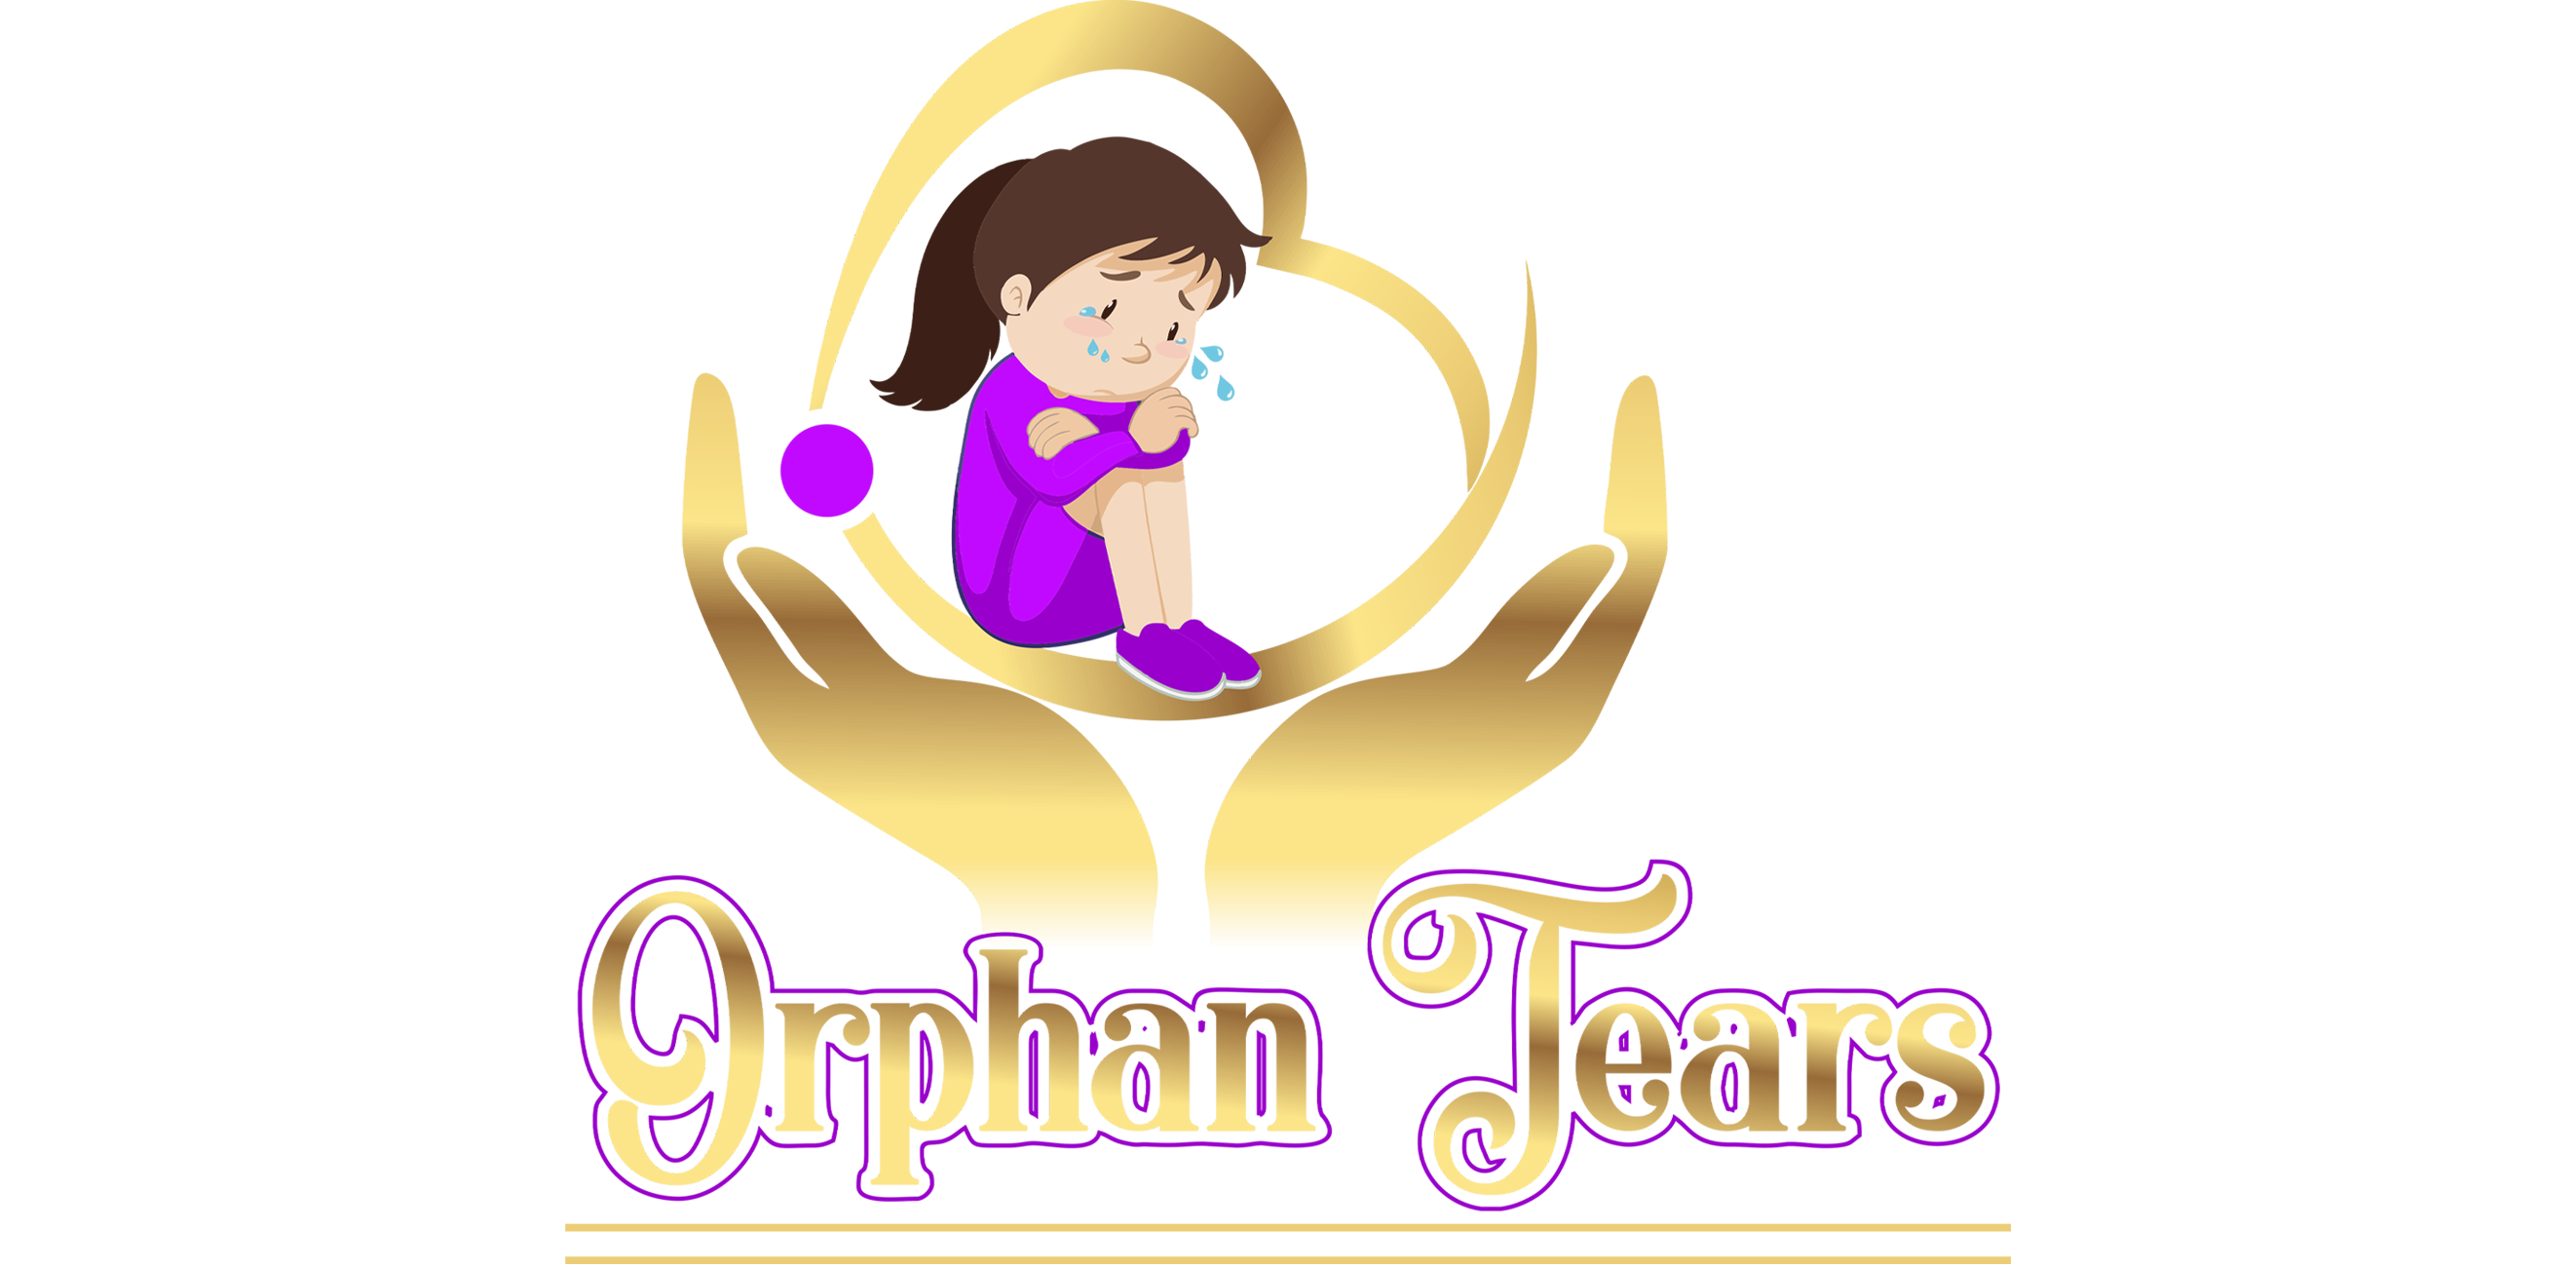 Orphan Tears 